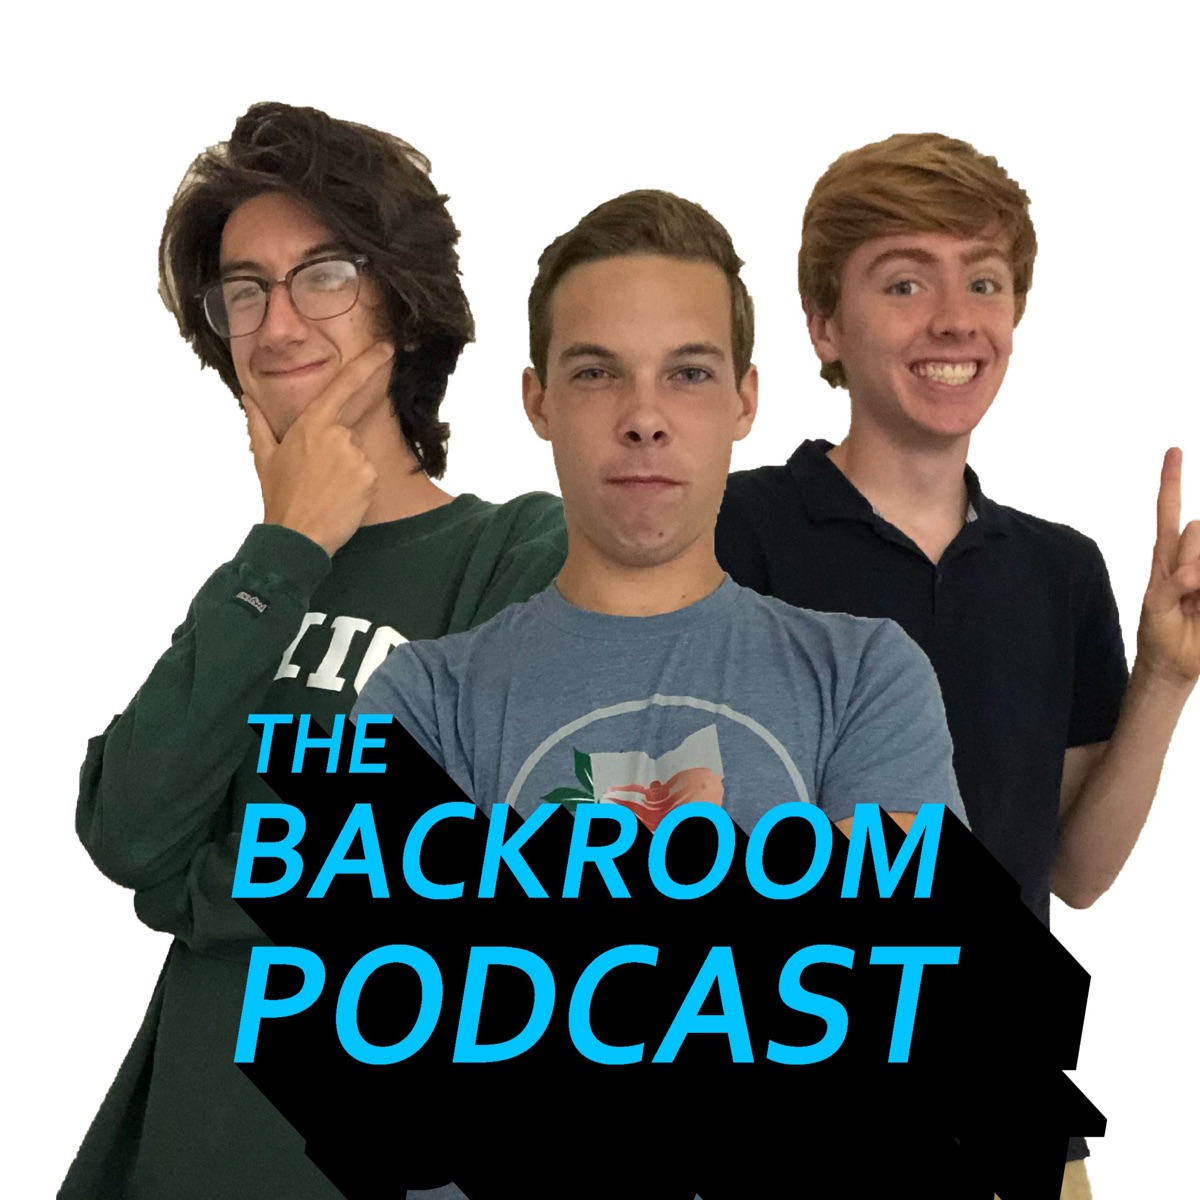 The Backrooms Podcast - The Backrooms Podcast